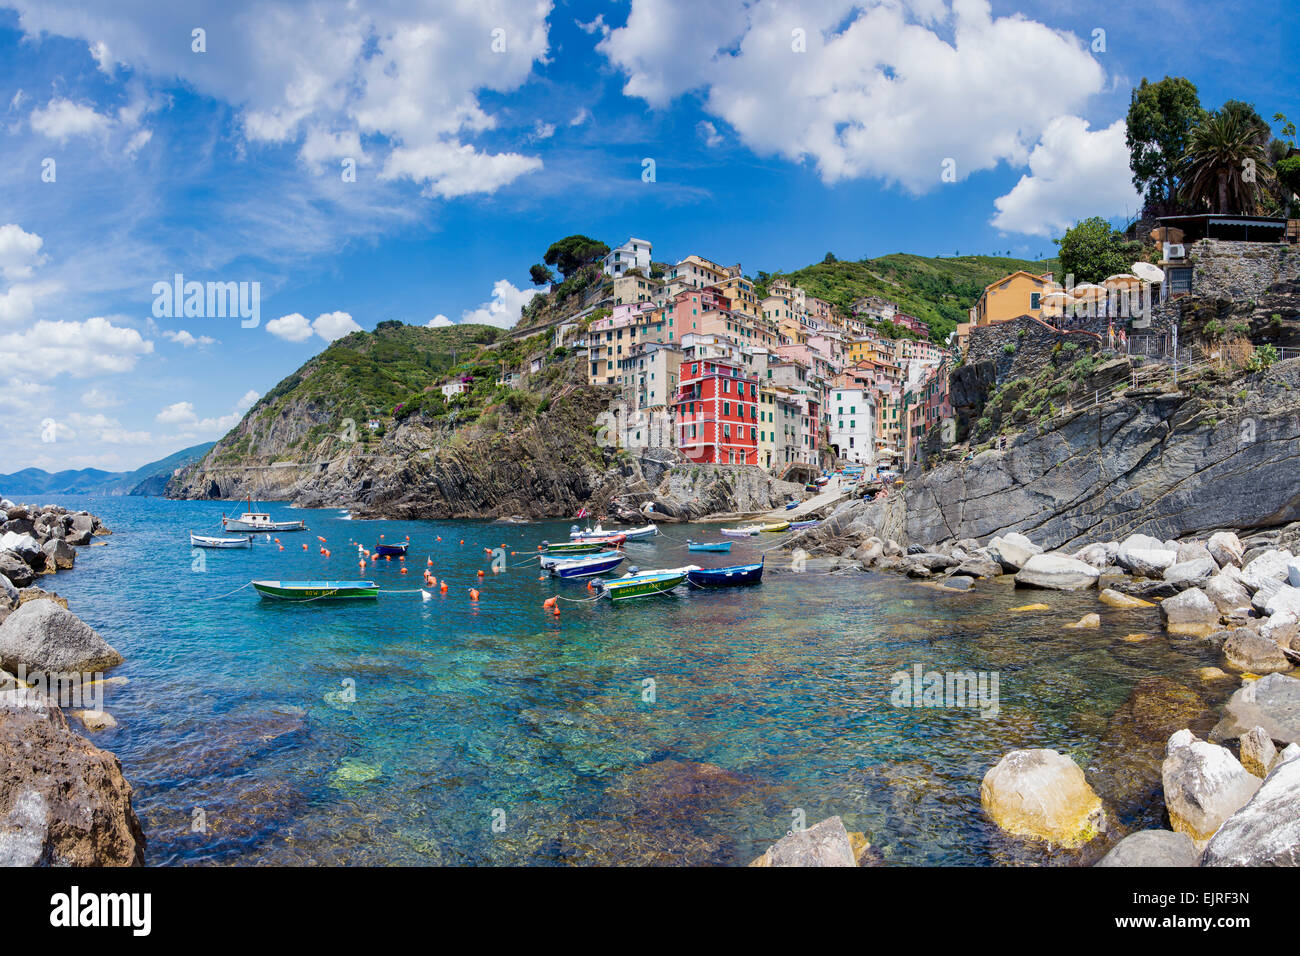 Riomaggiore clifftop village, Cinque Terre, Liguria, Italy, UNESCO World Heritage Site Stock Photo